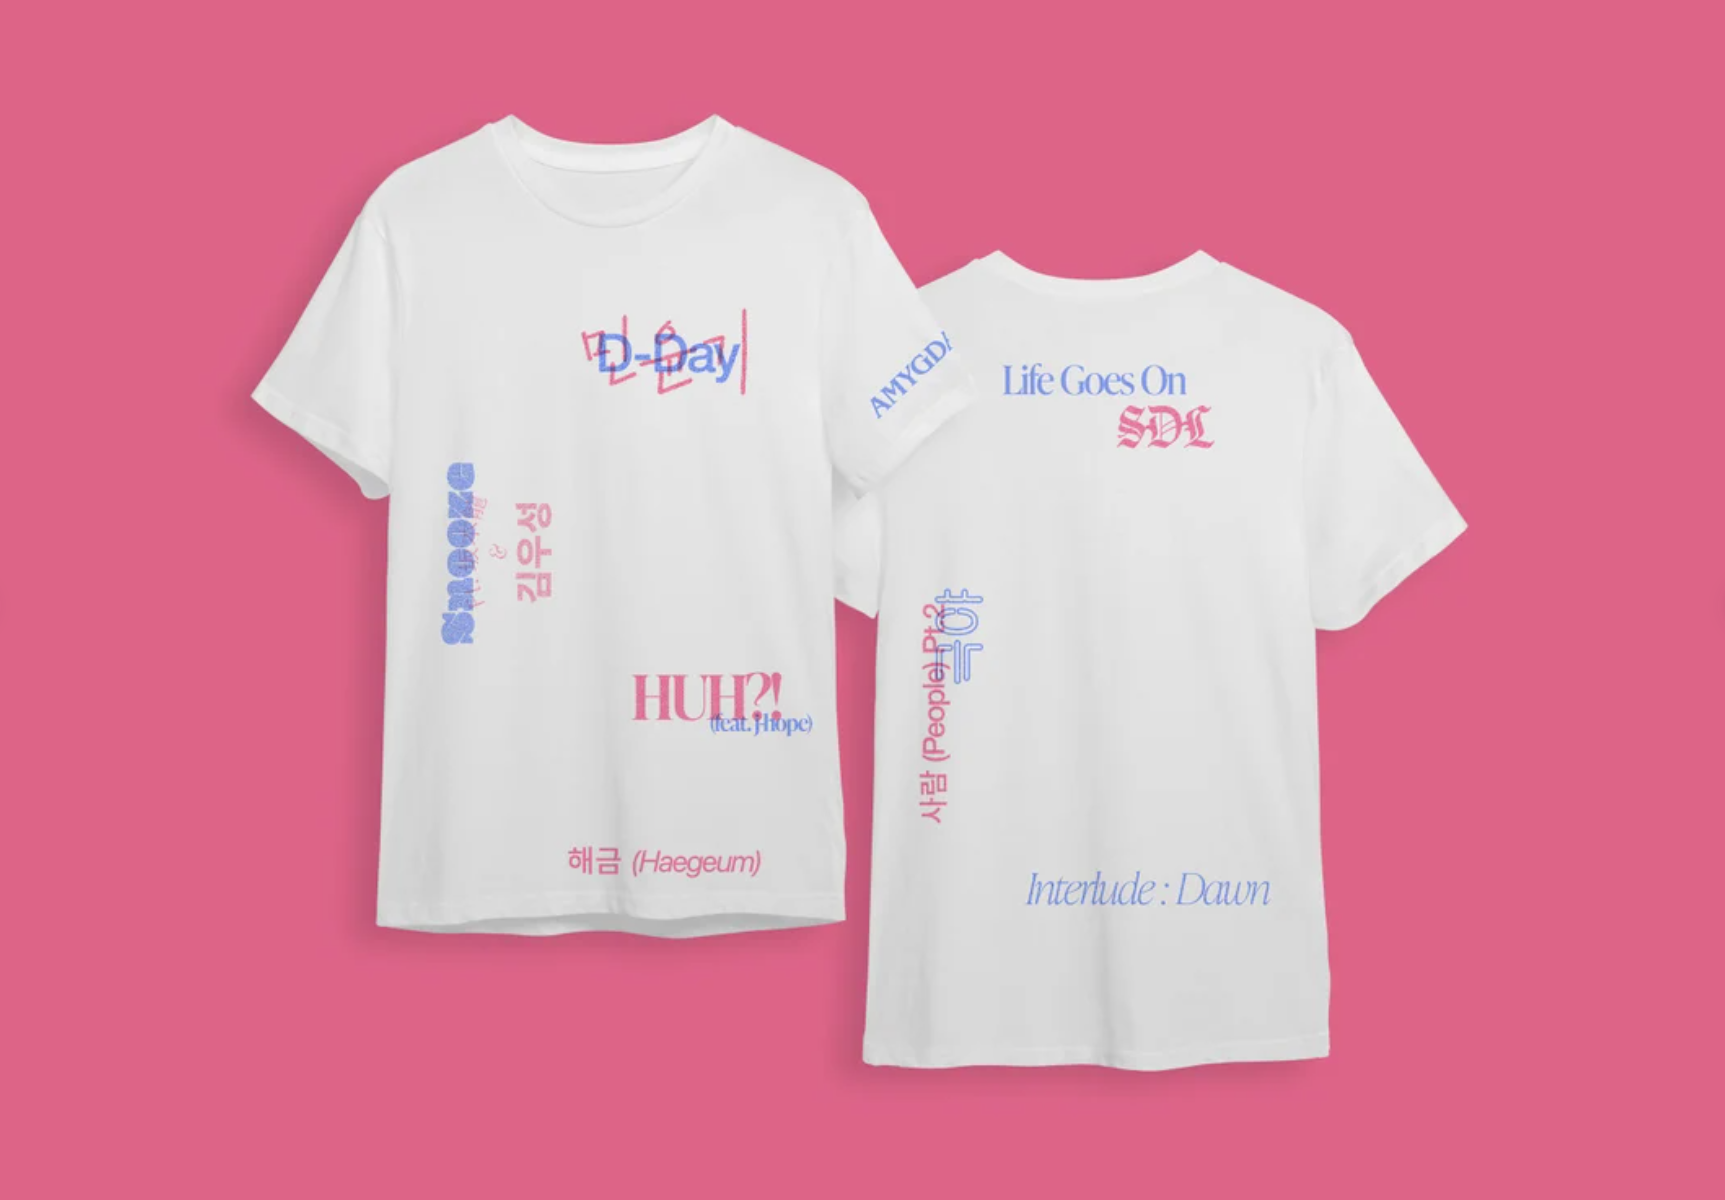 BTS T-shirt BTS Army Shirt Love Yourself Heart Shirt Bts 